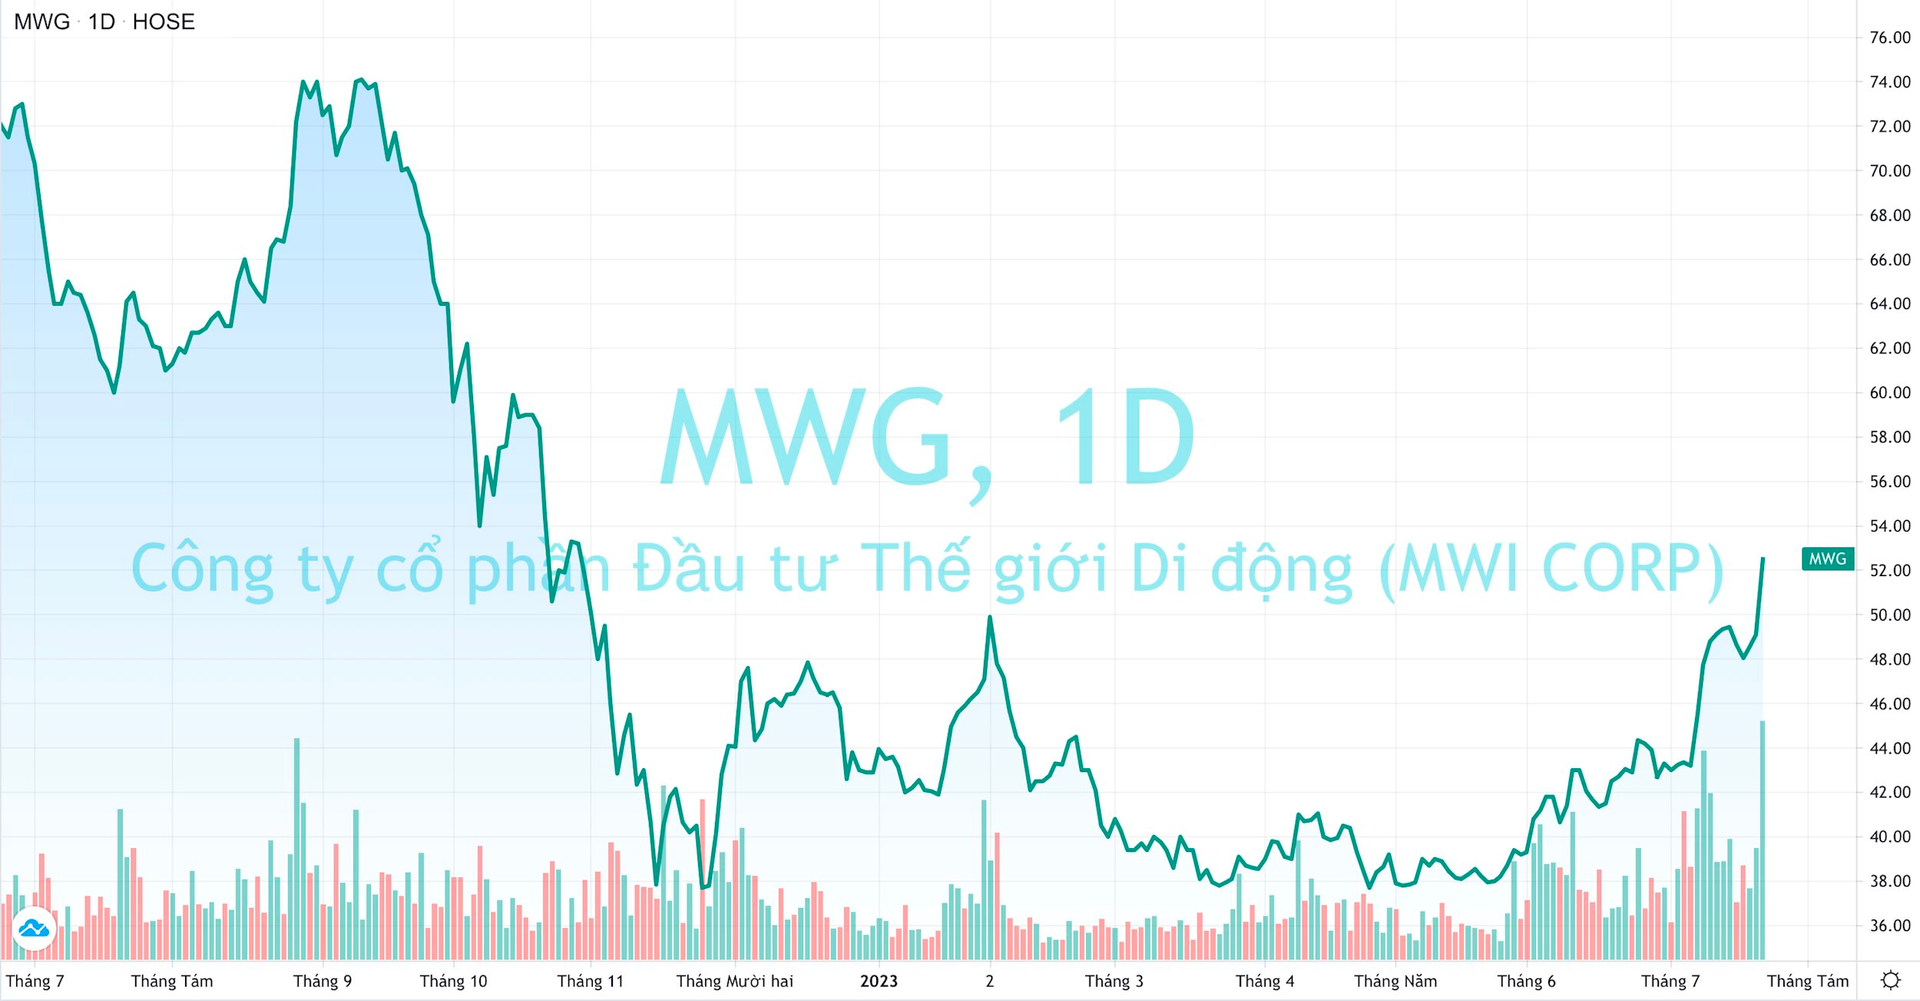 Thế Giới Di Động (MWG) khớp lệnh kỷ lục, cổ phiếu tăng kịch trần lên đỉnh 9 tháng - Ảnh 2.